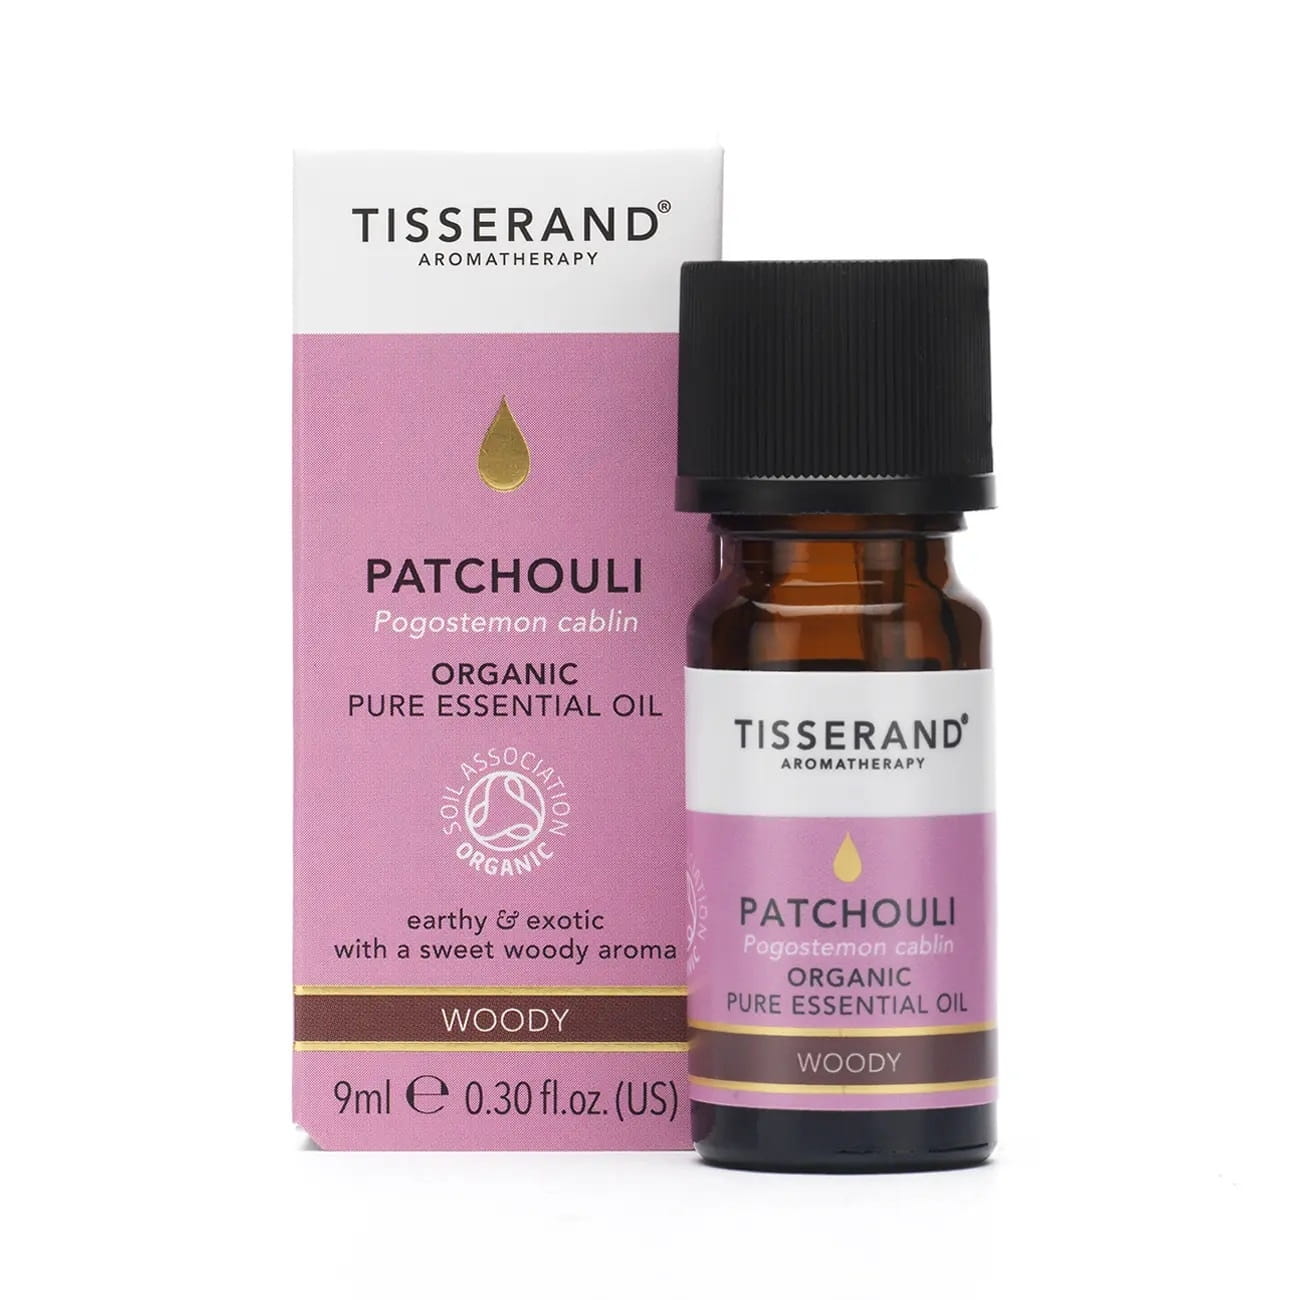 Tisserand Aromatherapy Patchouli Organic Olejek z Paczuli 9 ml Tisserand Aromatherapy